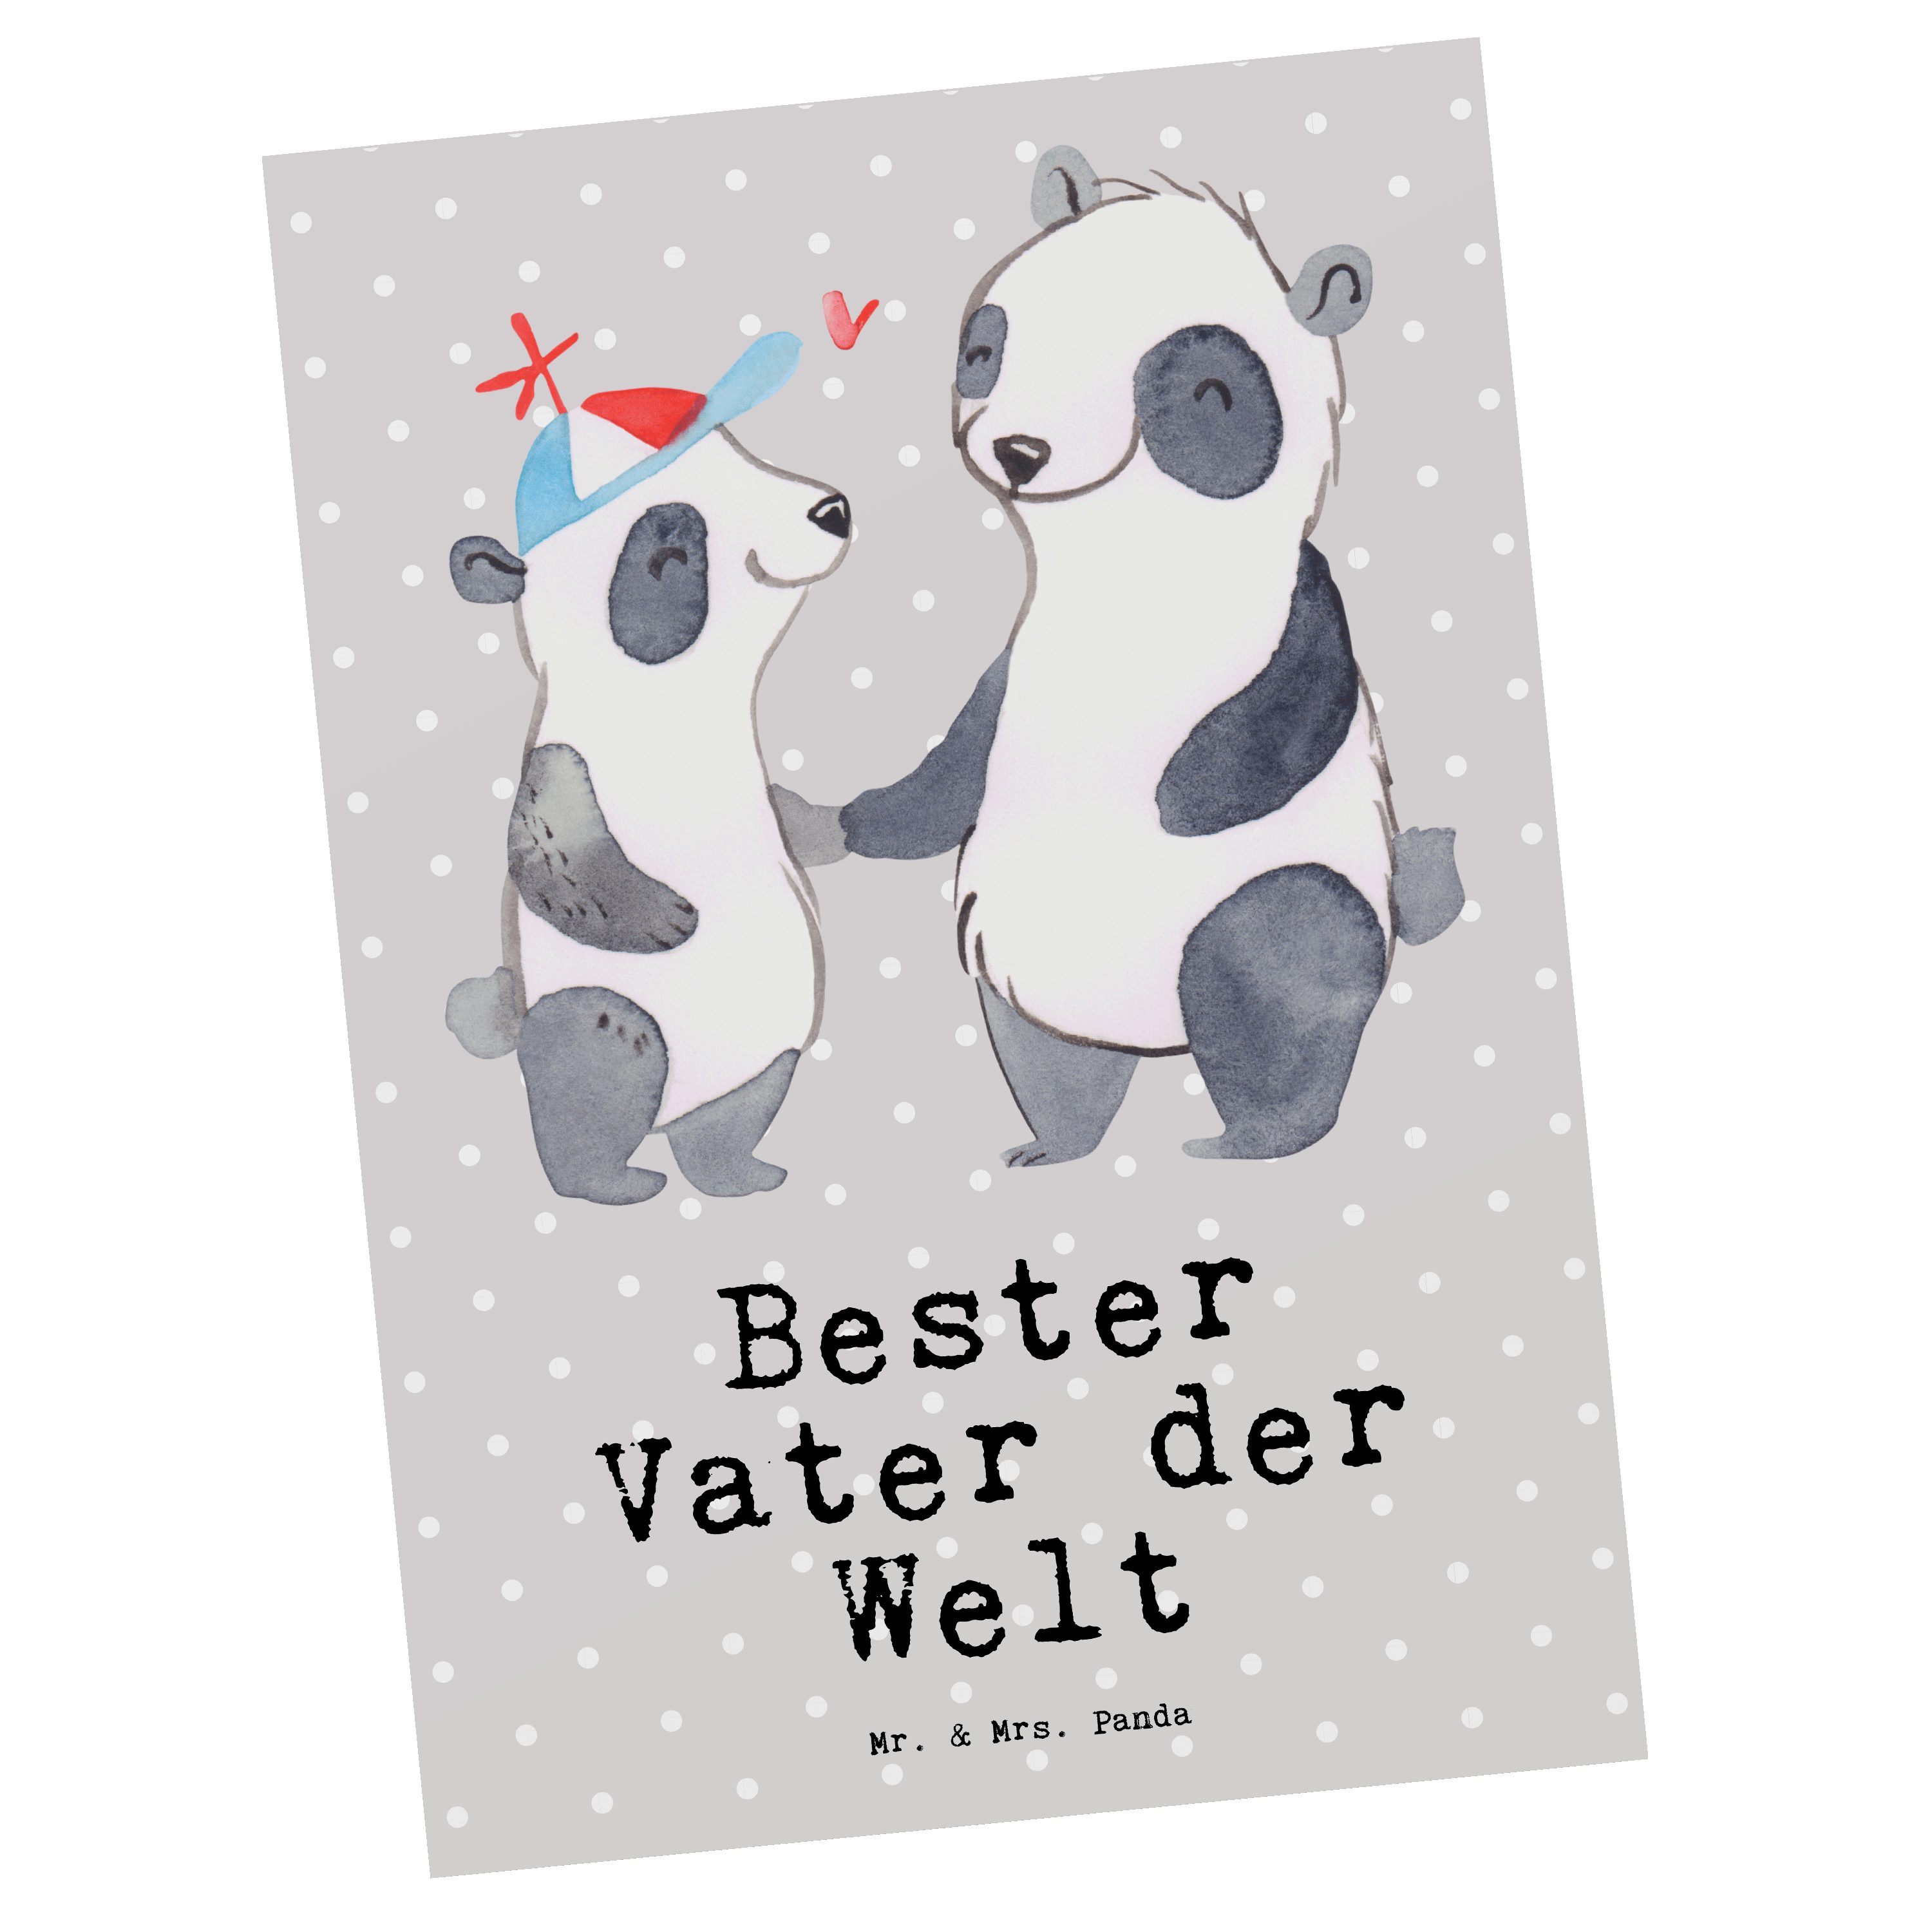 Mr. & Mrs. Panda Postkarte Panda Bester Vater der Welt - Grau Pastell - Geschenk, Mann, Karte, G